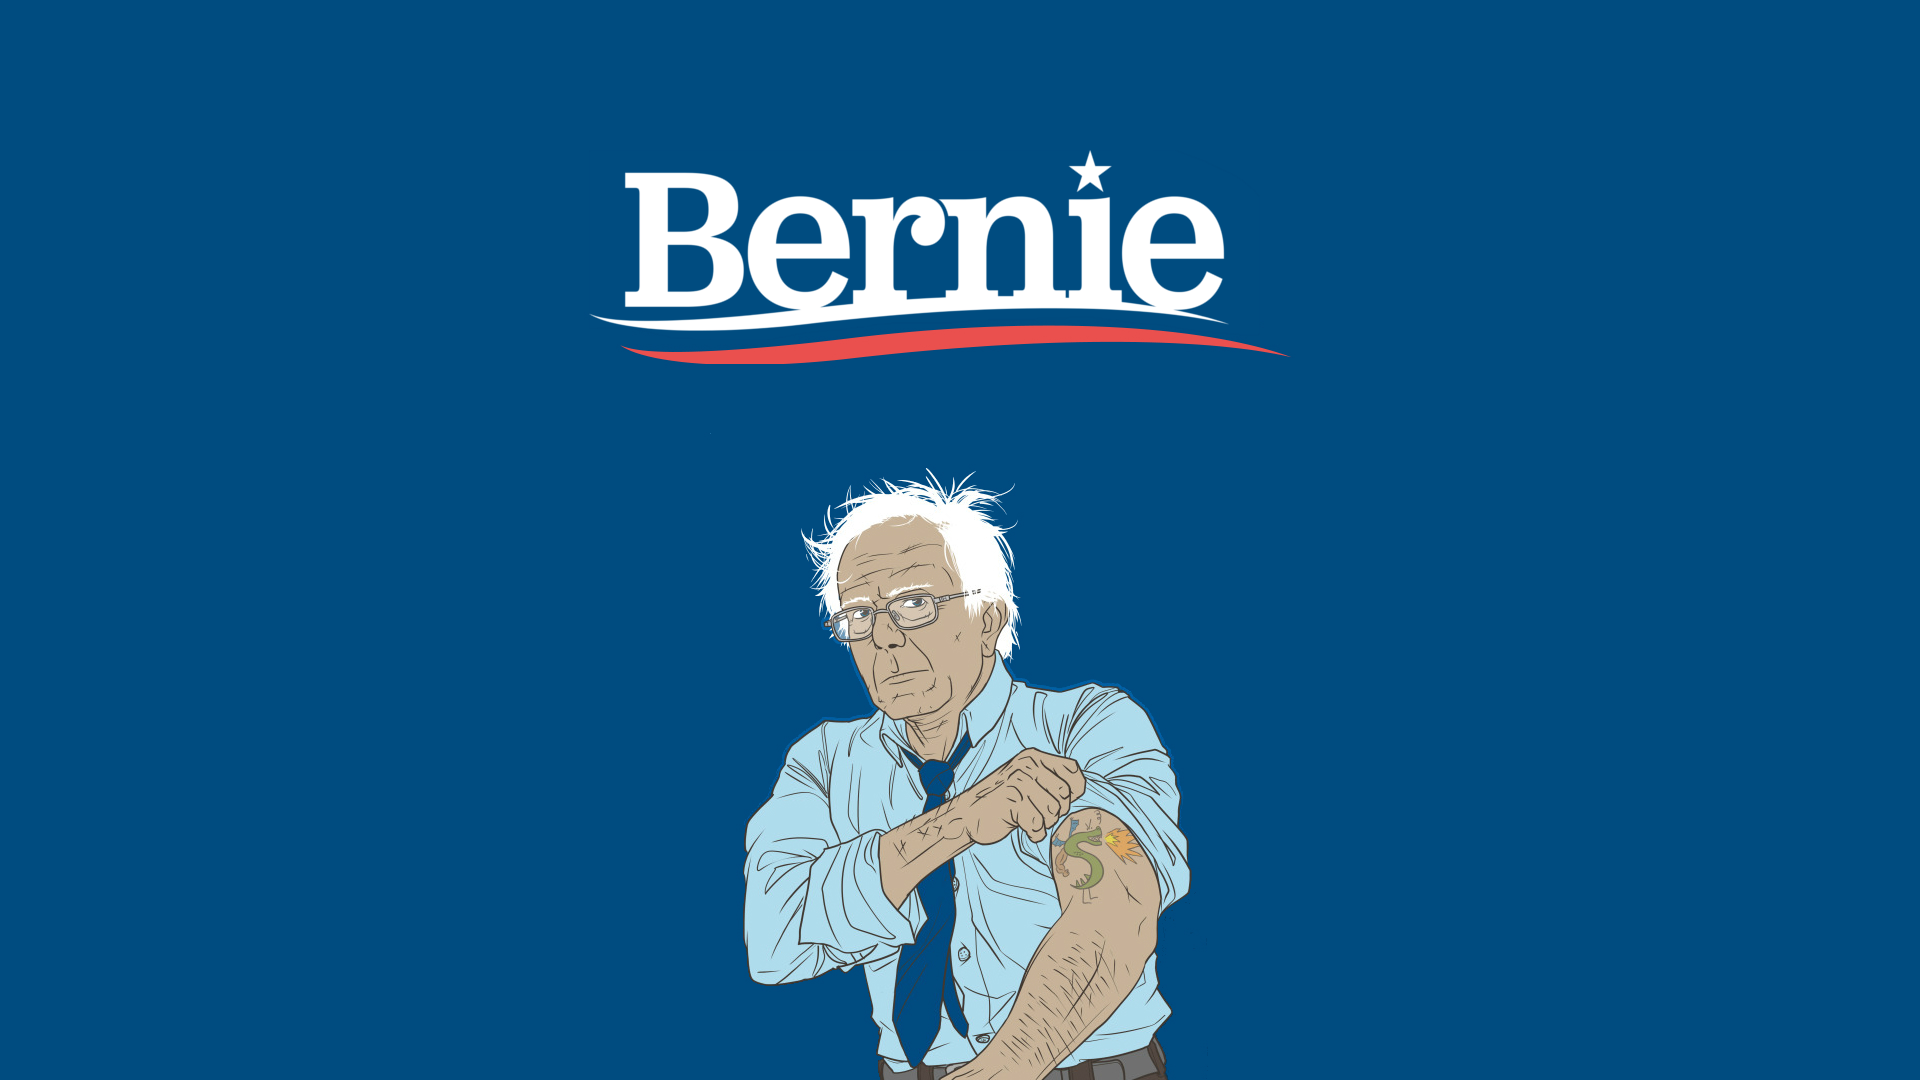 Bernie Sanders Desktop Wallpapers